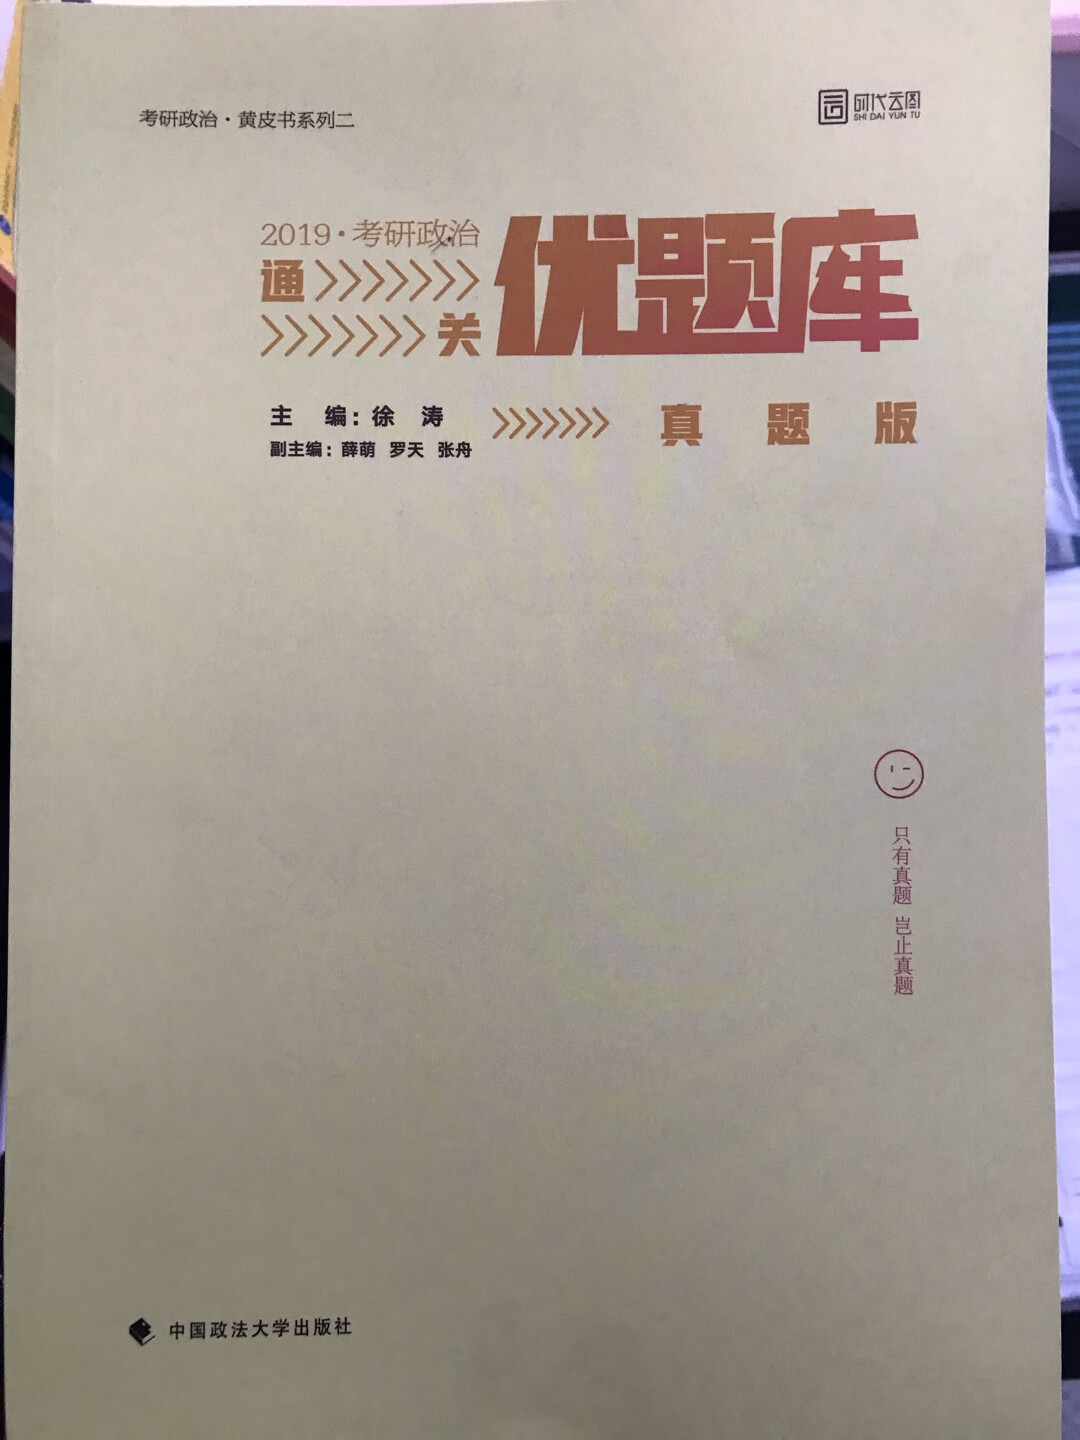 书很好，解析详细，支持徐涛老师，上课也很有意思